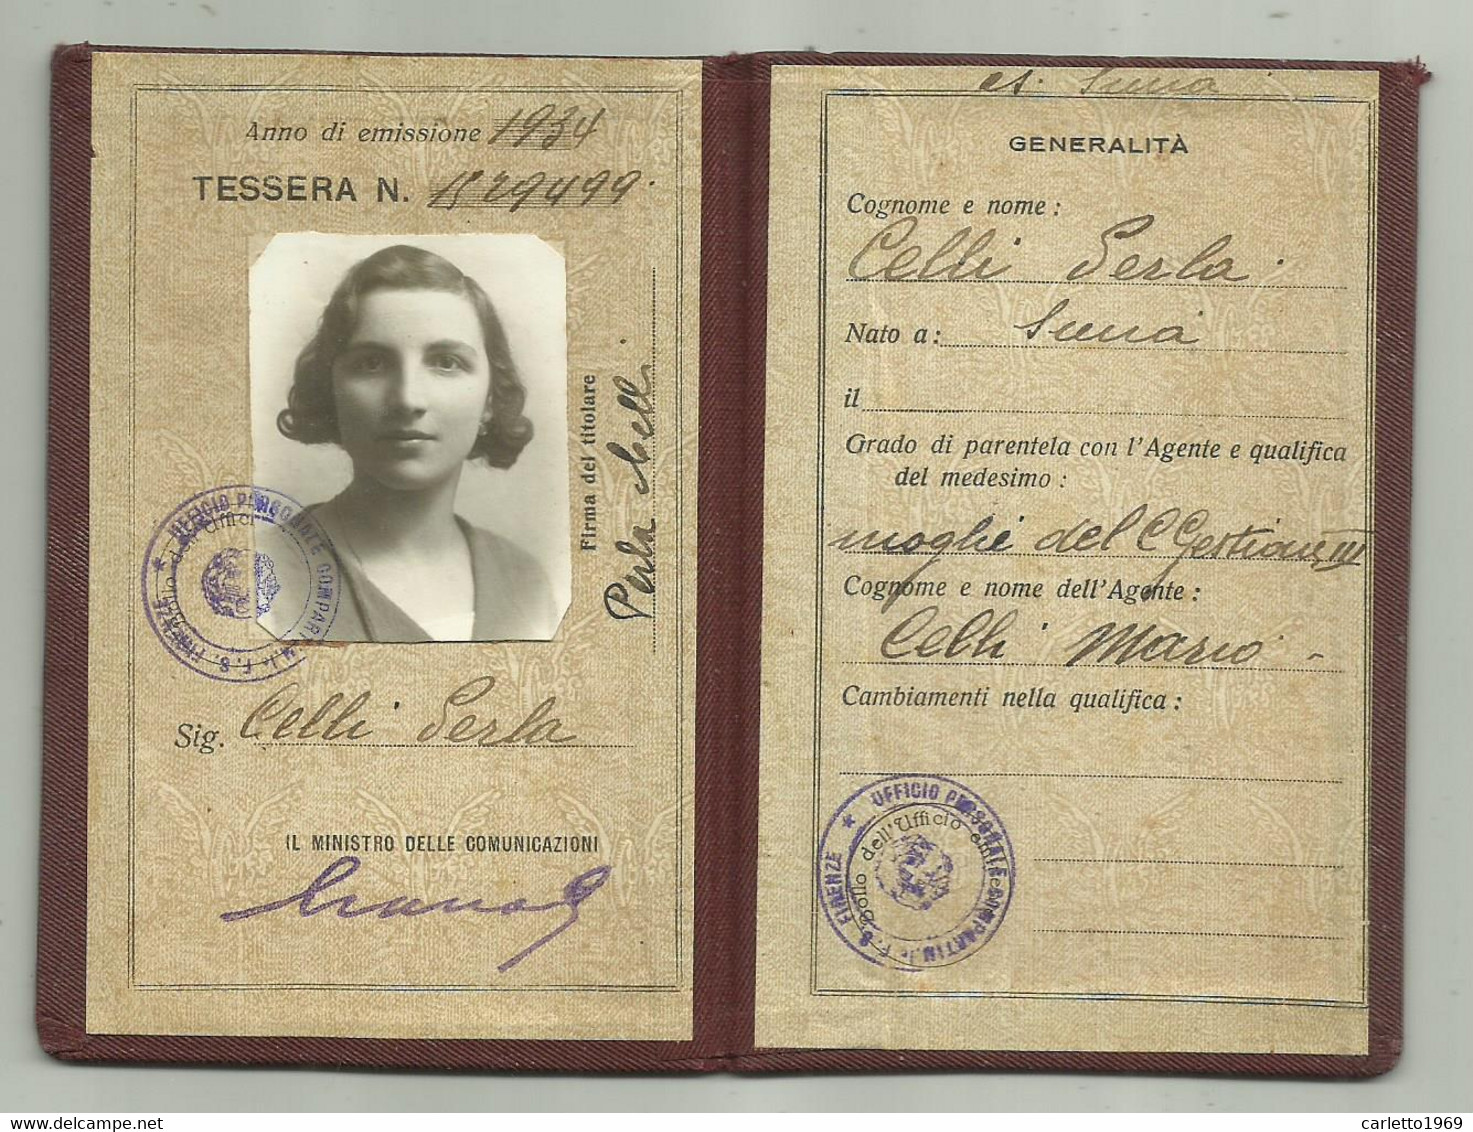 FERROVIA DELLO STATO TESSERA DI RICONOSCIMENTO PER FAMIGLIE 1934 - Historical Documents